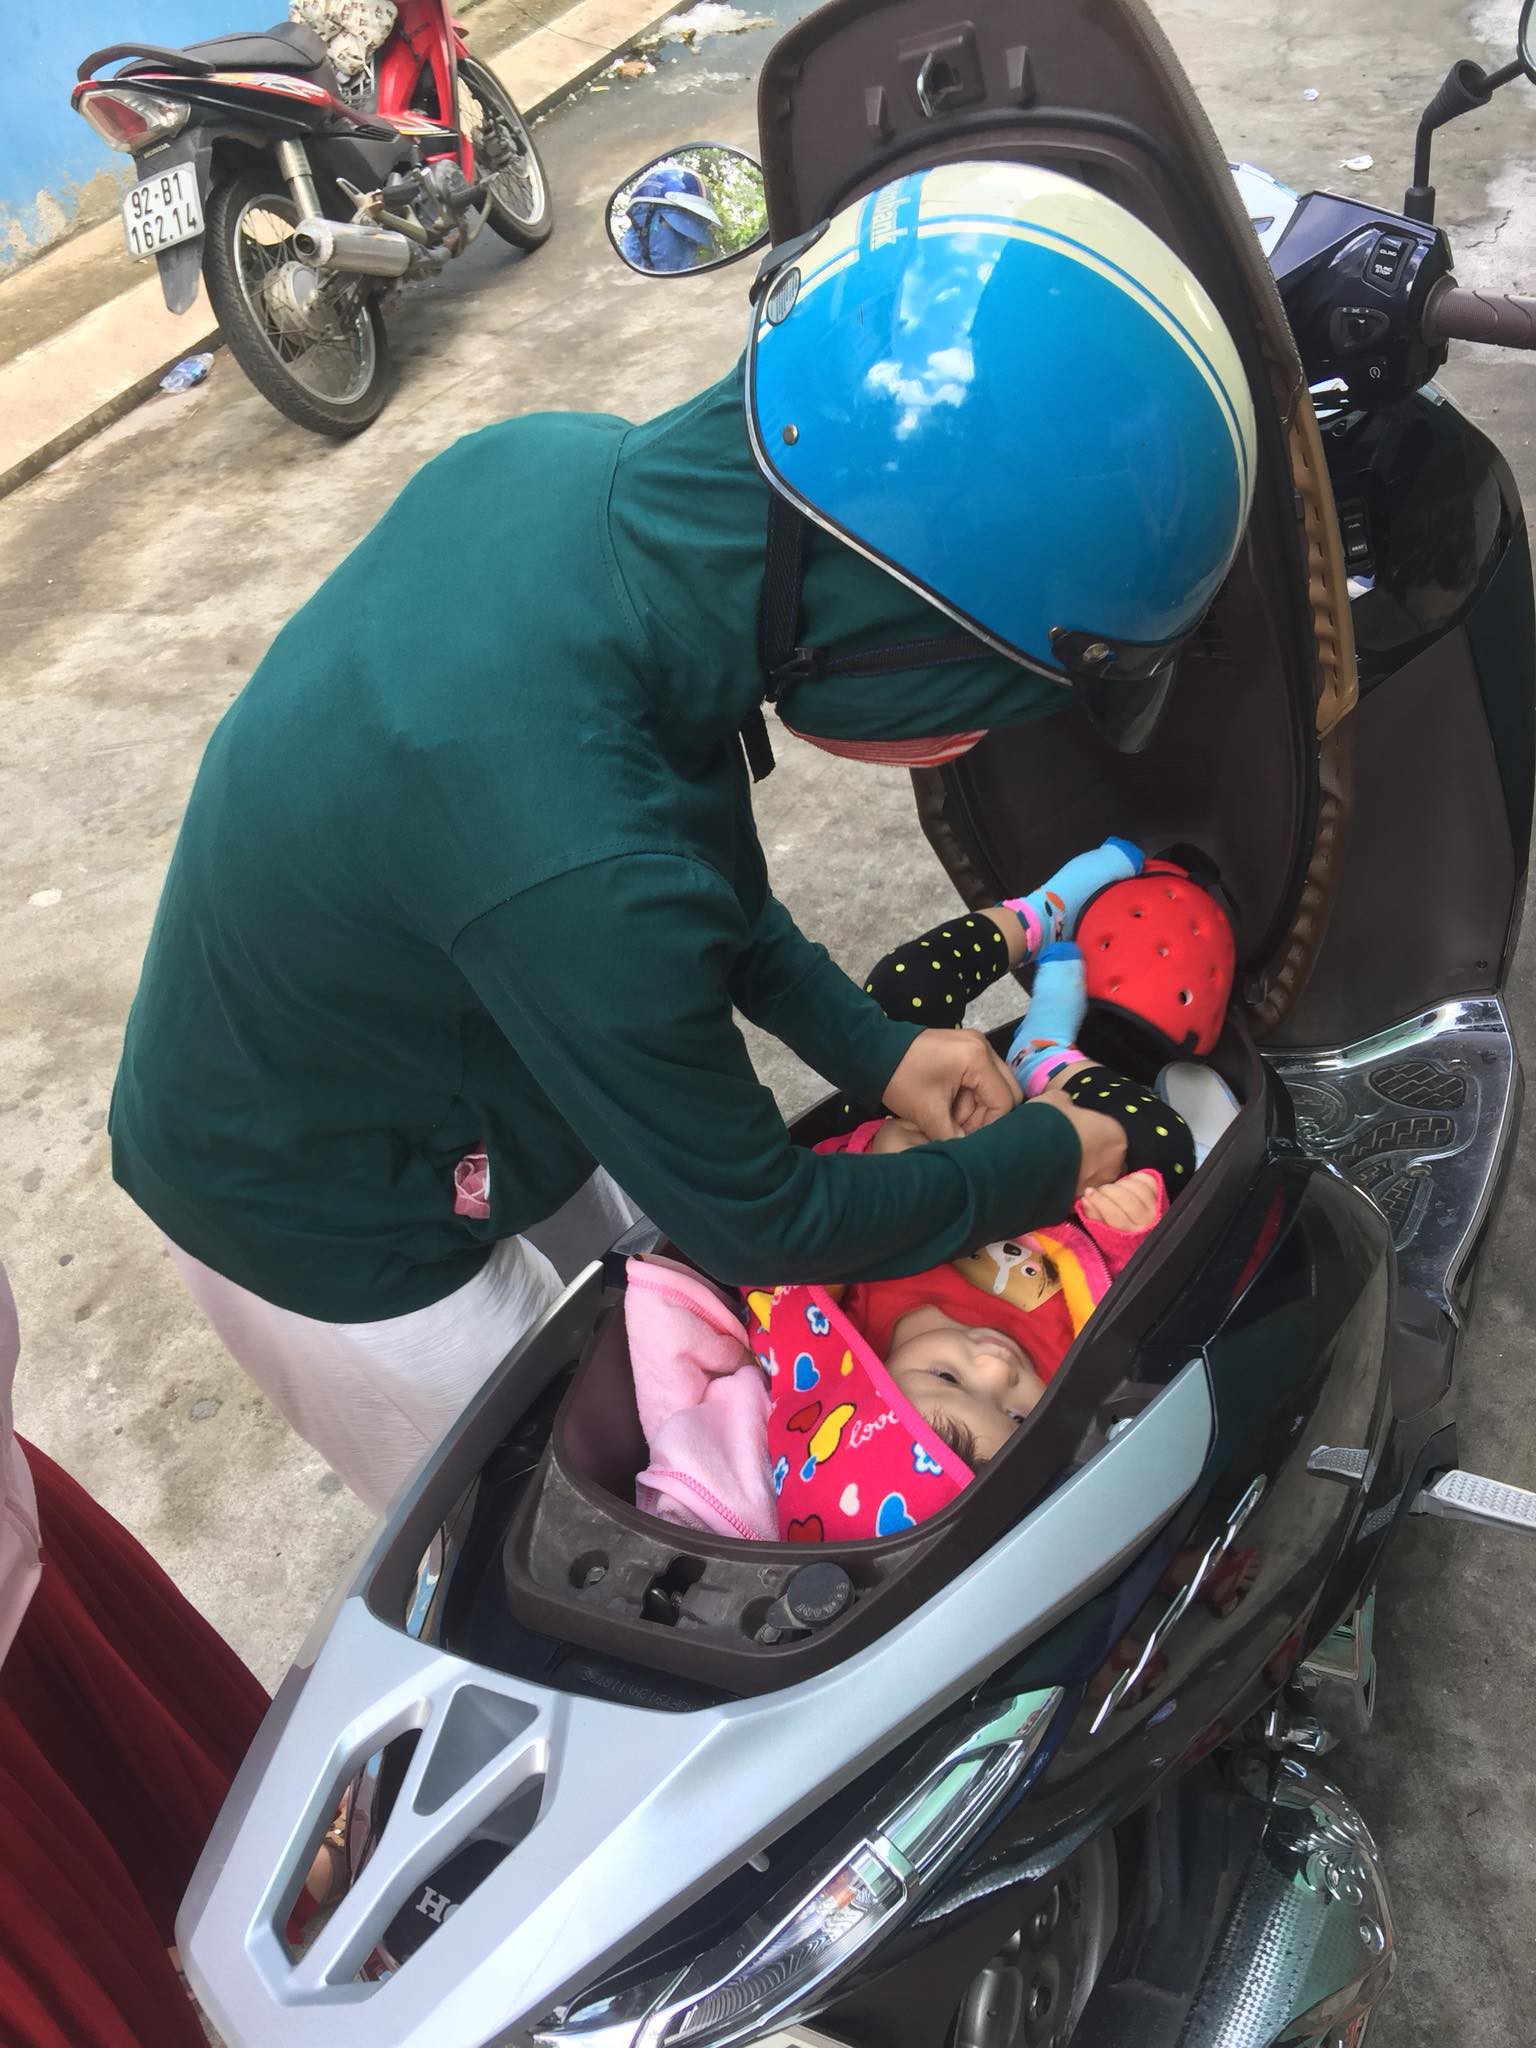 Hình ảnh chị gái đặt con nhỏ vào cốp xe máy để thay tã bên lề đường khiến dân mạng thi nhau đồn đoán đủ điều - Ảnh 2.